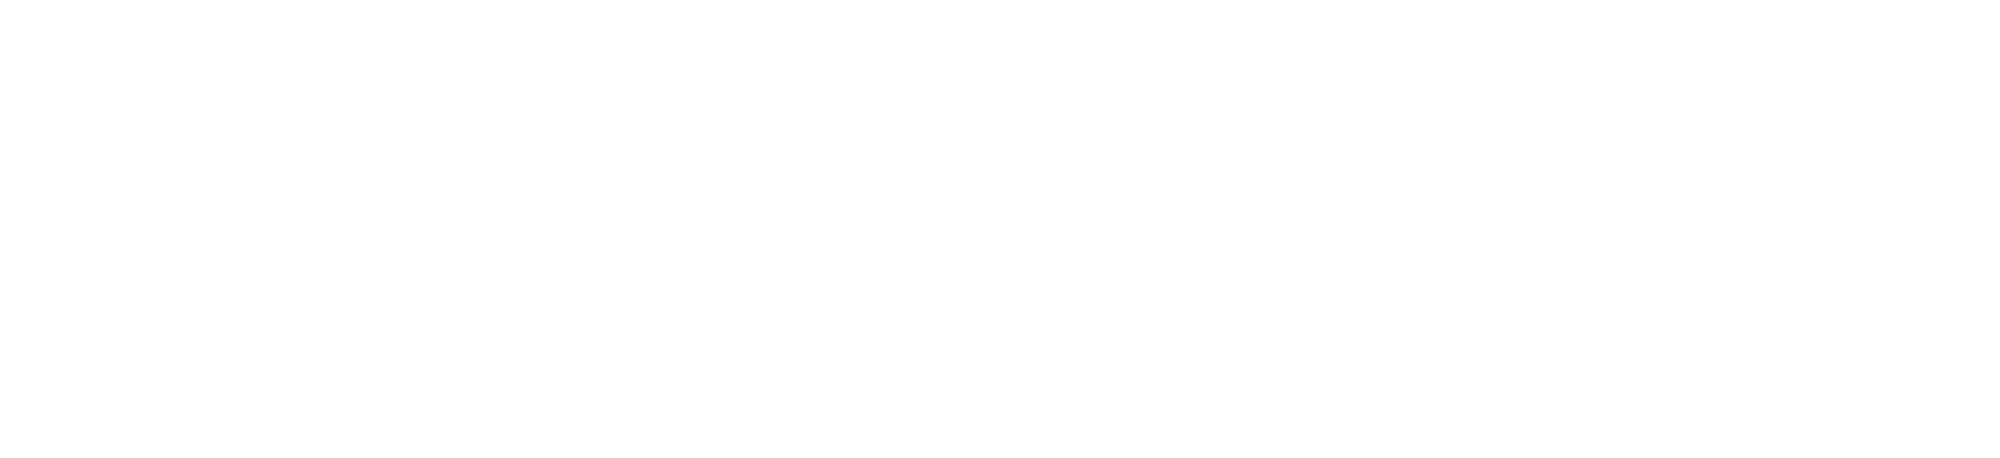 sena-logo_wit.png